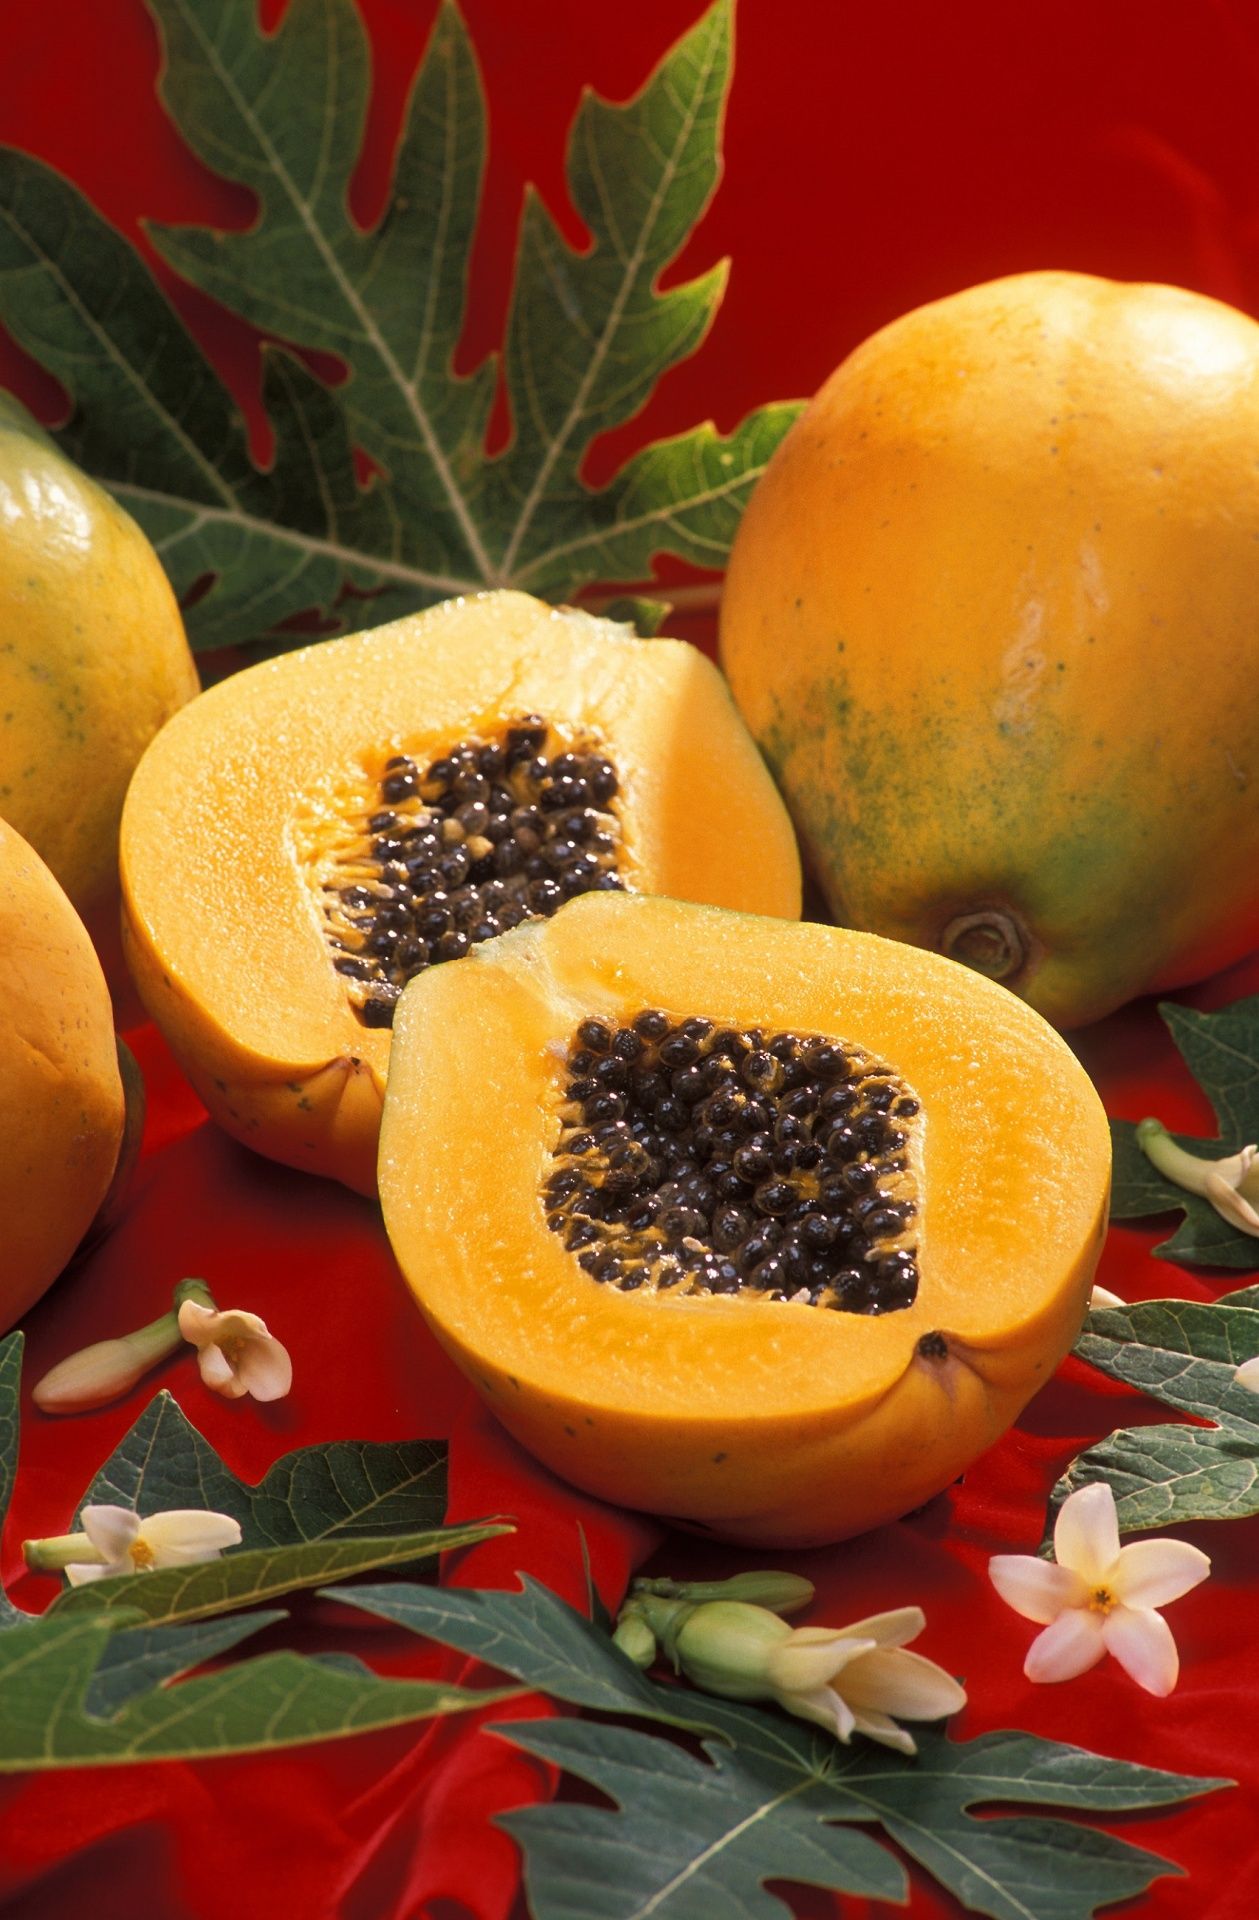 Download free photo of Papaya, fresh, cut, whole, uncut